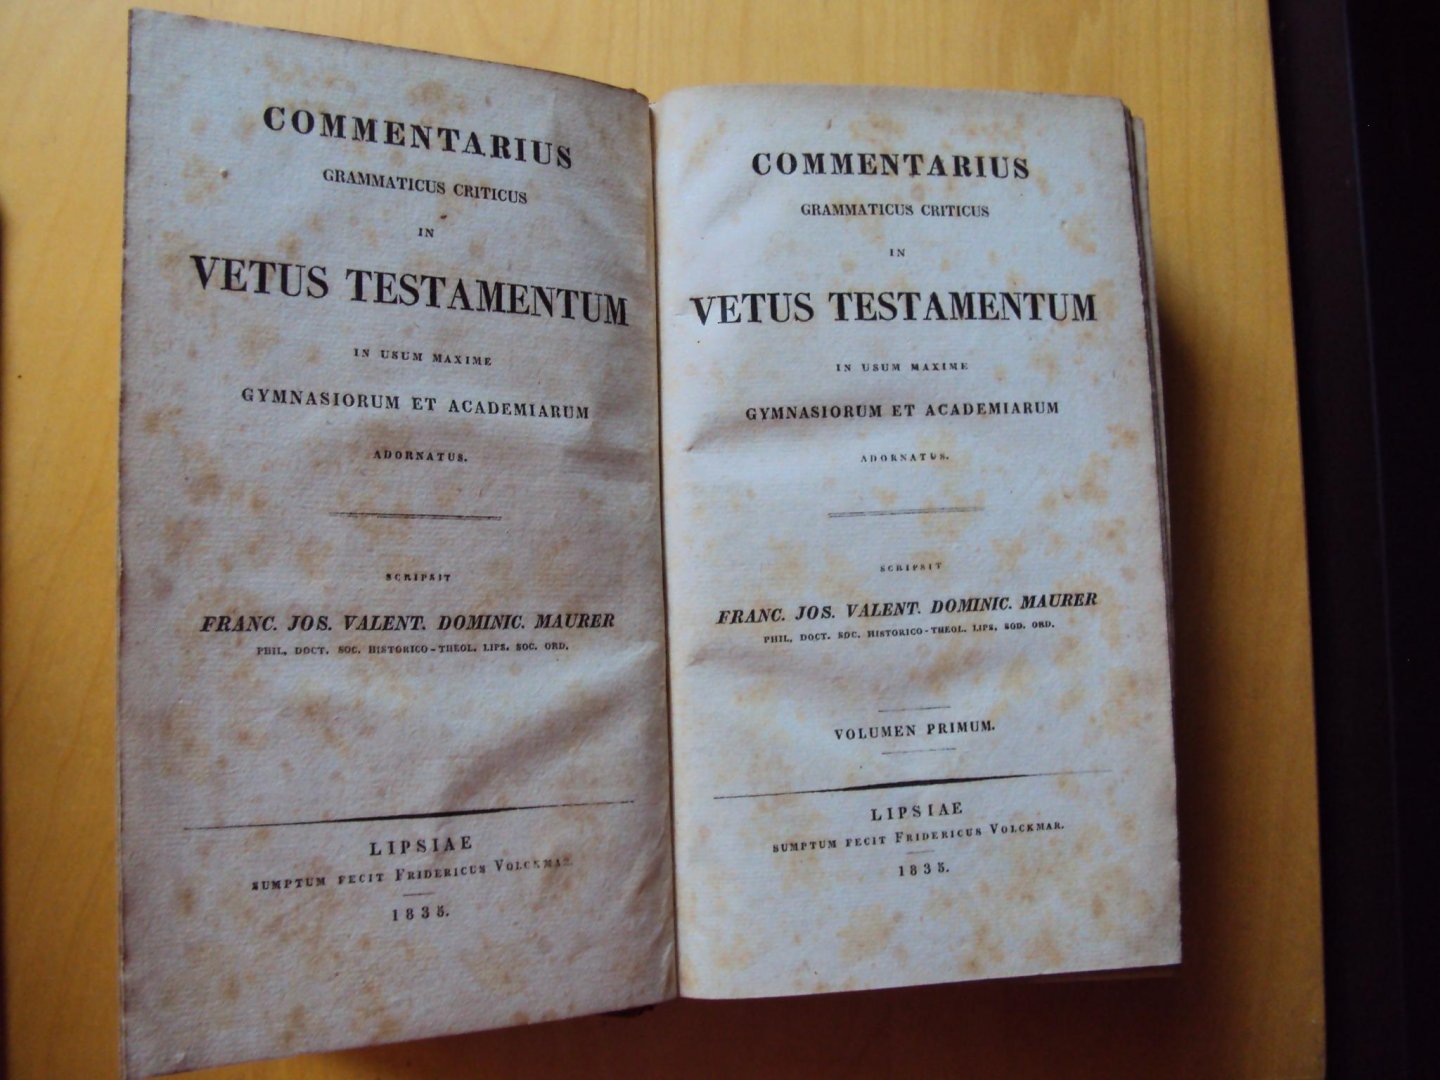 Maurer, Franc. Jos. Valent. Dominic., - Commentarius Grammaticus Criticus in Vetus Testamentum in usum maxime gymnasiorum et academiarum adornatus